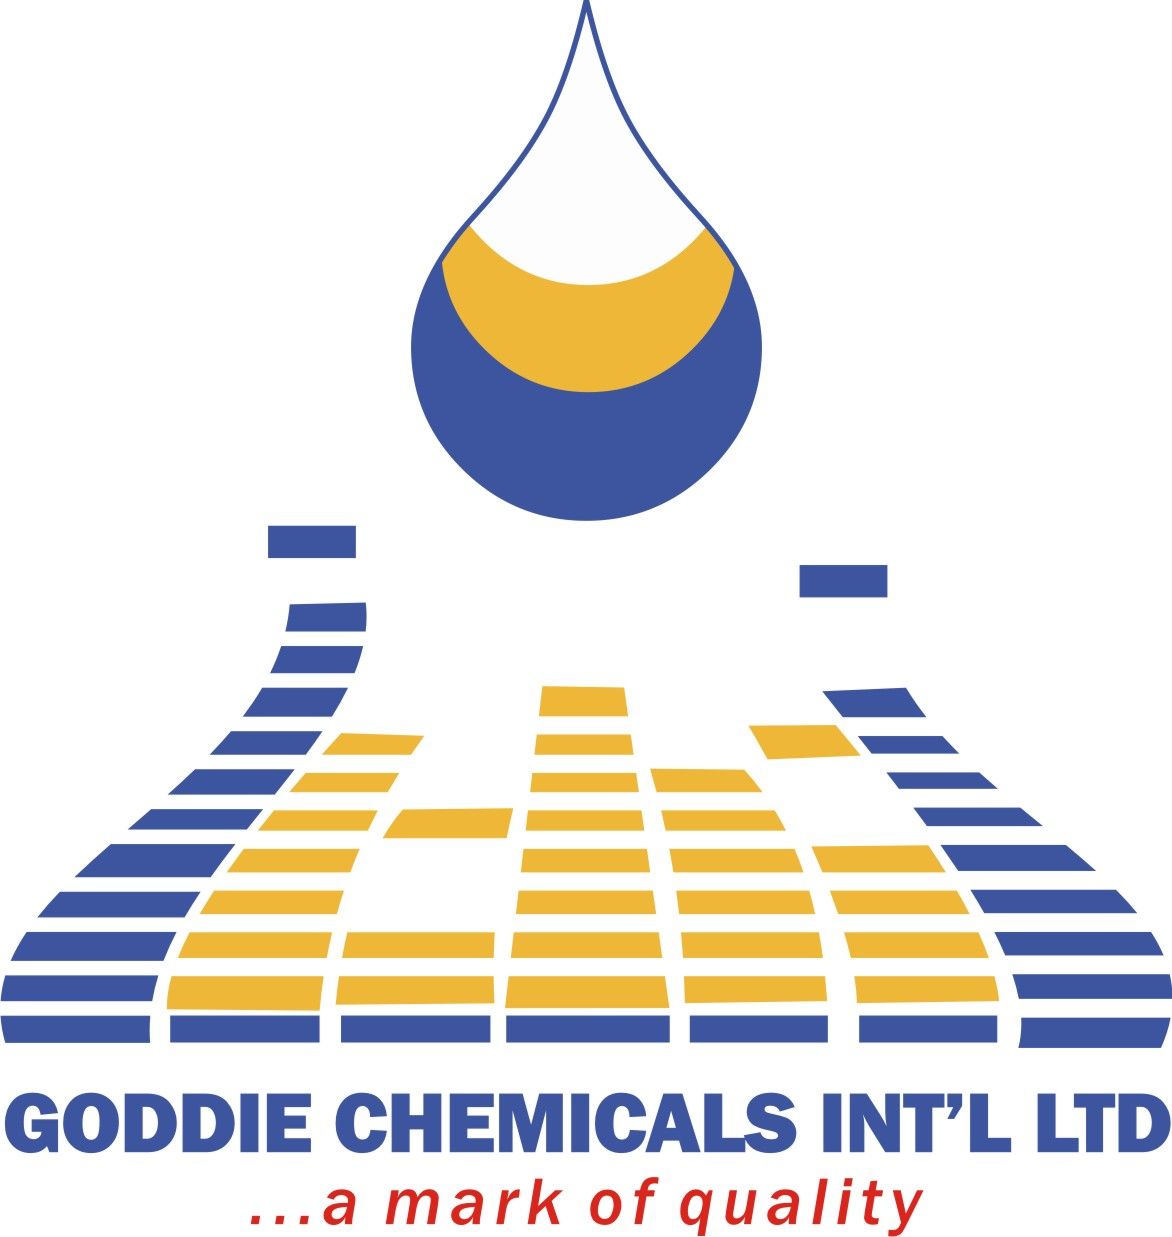 Goddie Chemicals International Ltd